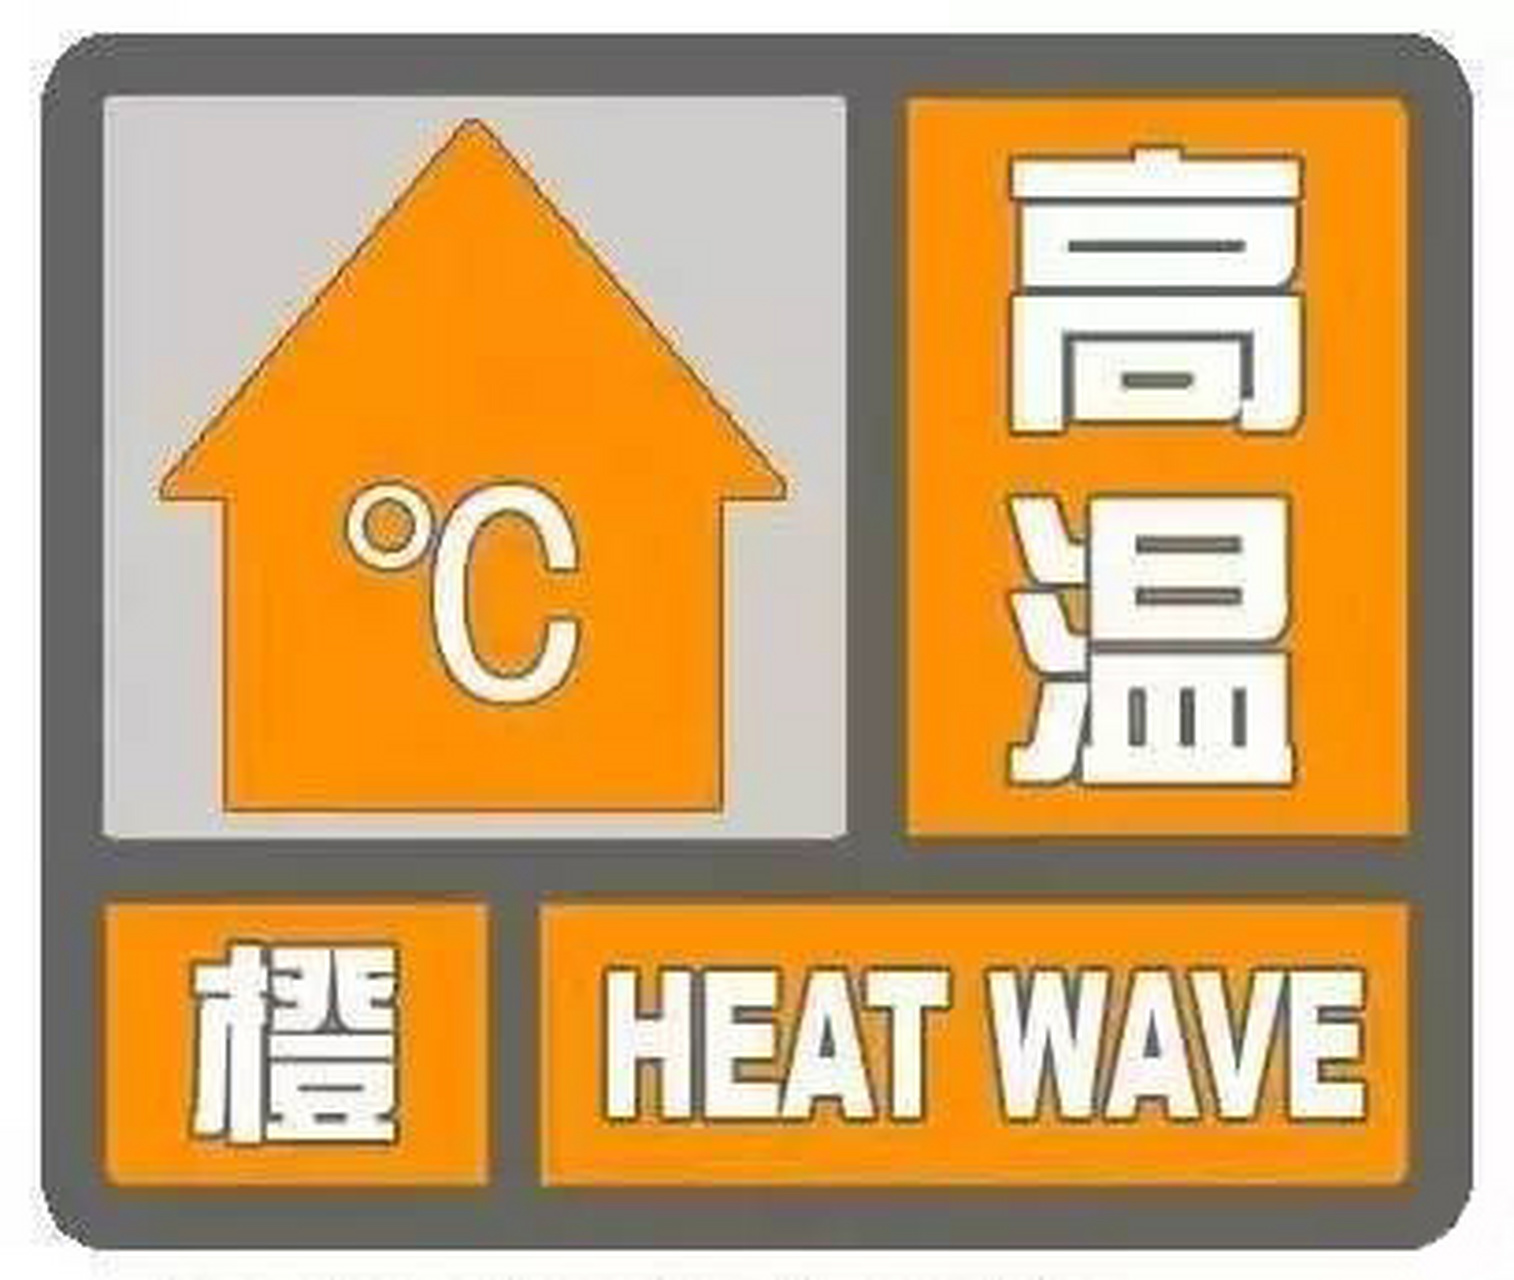 继续发布高温橙色预警信号:预计明天白天,我市全部县区将出现高温天气